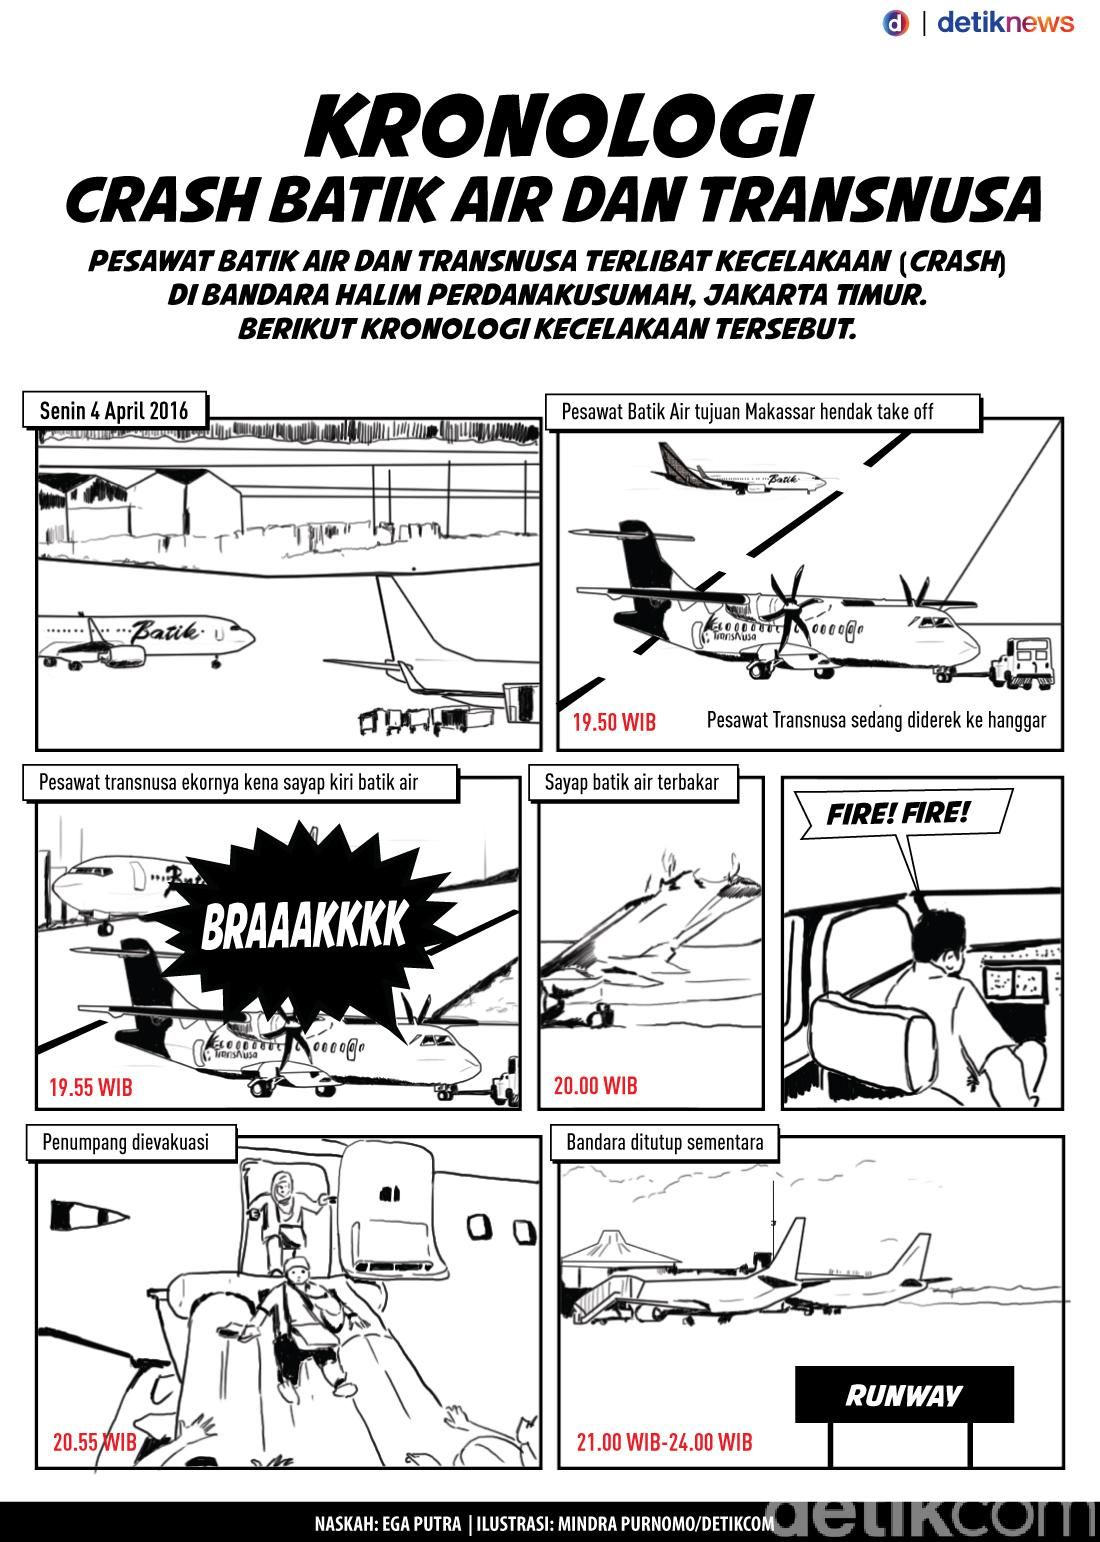 Izin Pilot Dan Staf Bandara Saat Kecelakaan Batik Air Trans Nusa